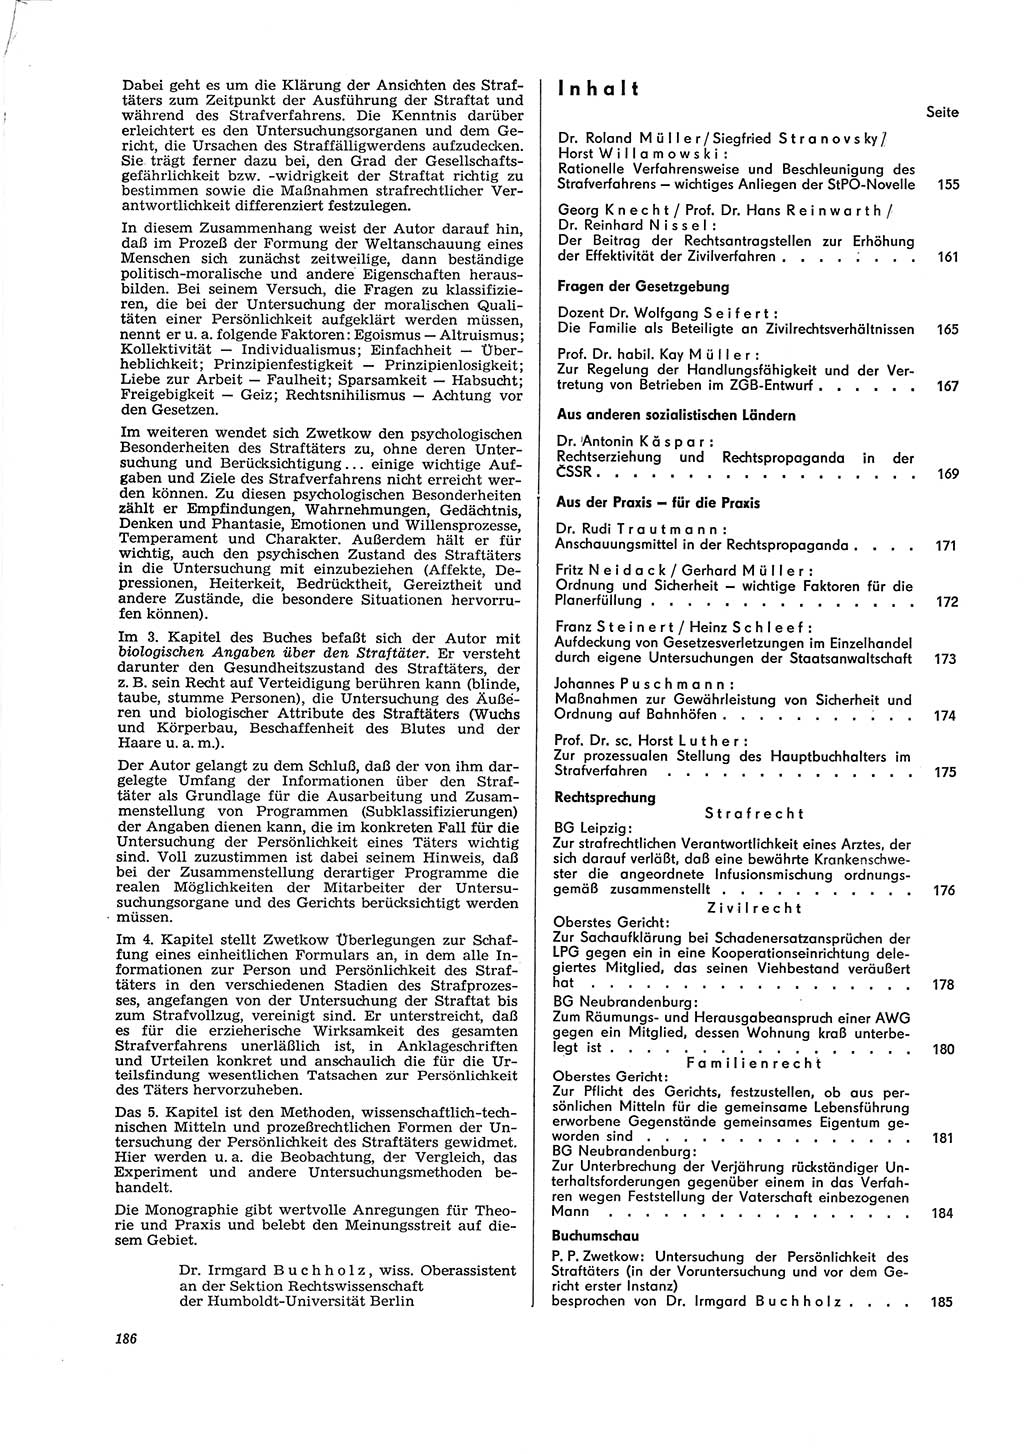 Neue Justiz (NJ), Zeitschrift für Recht und Rechtswissenschaft [Deutsche Demokratische Republik (DDR)], 29. Jahrgang 1975, Seite 186 (NJ DDR 1975, S. 186)